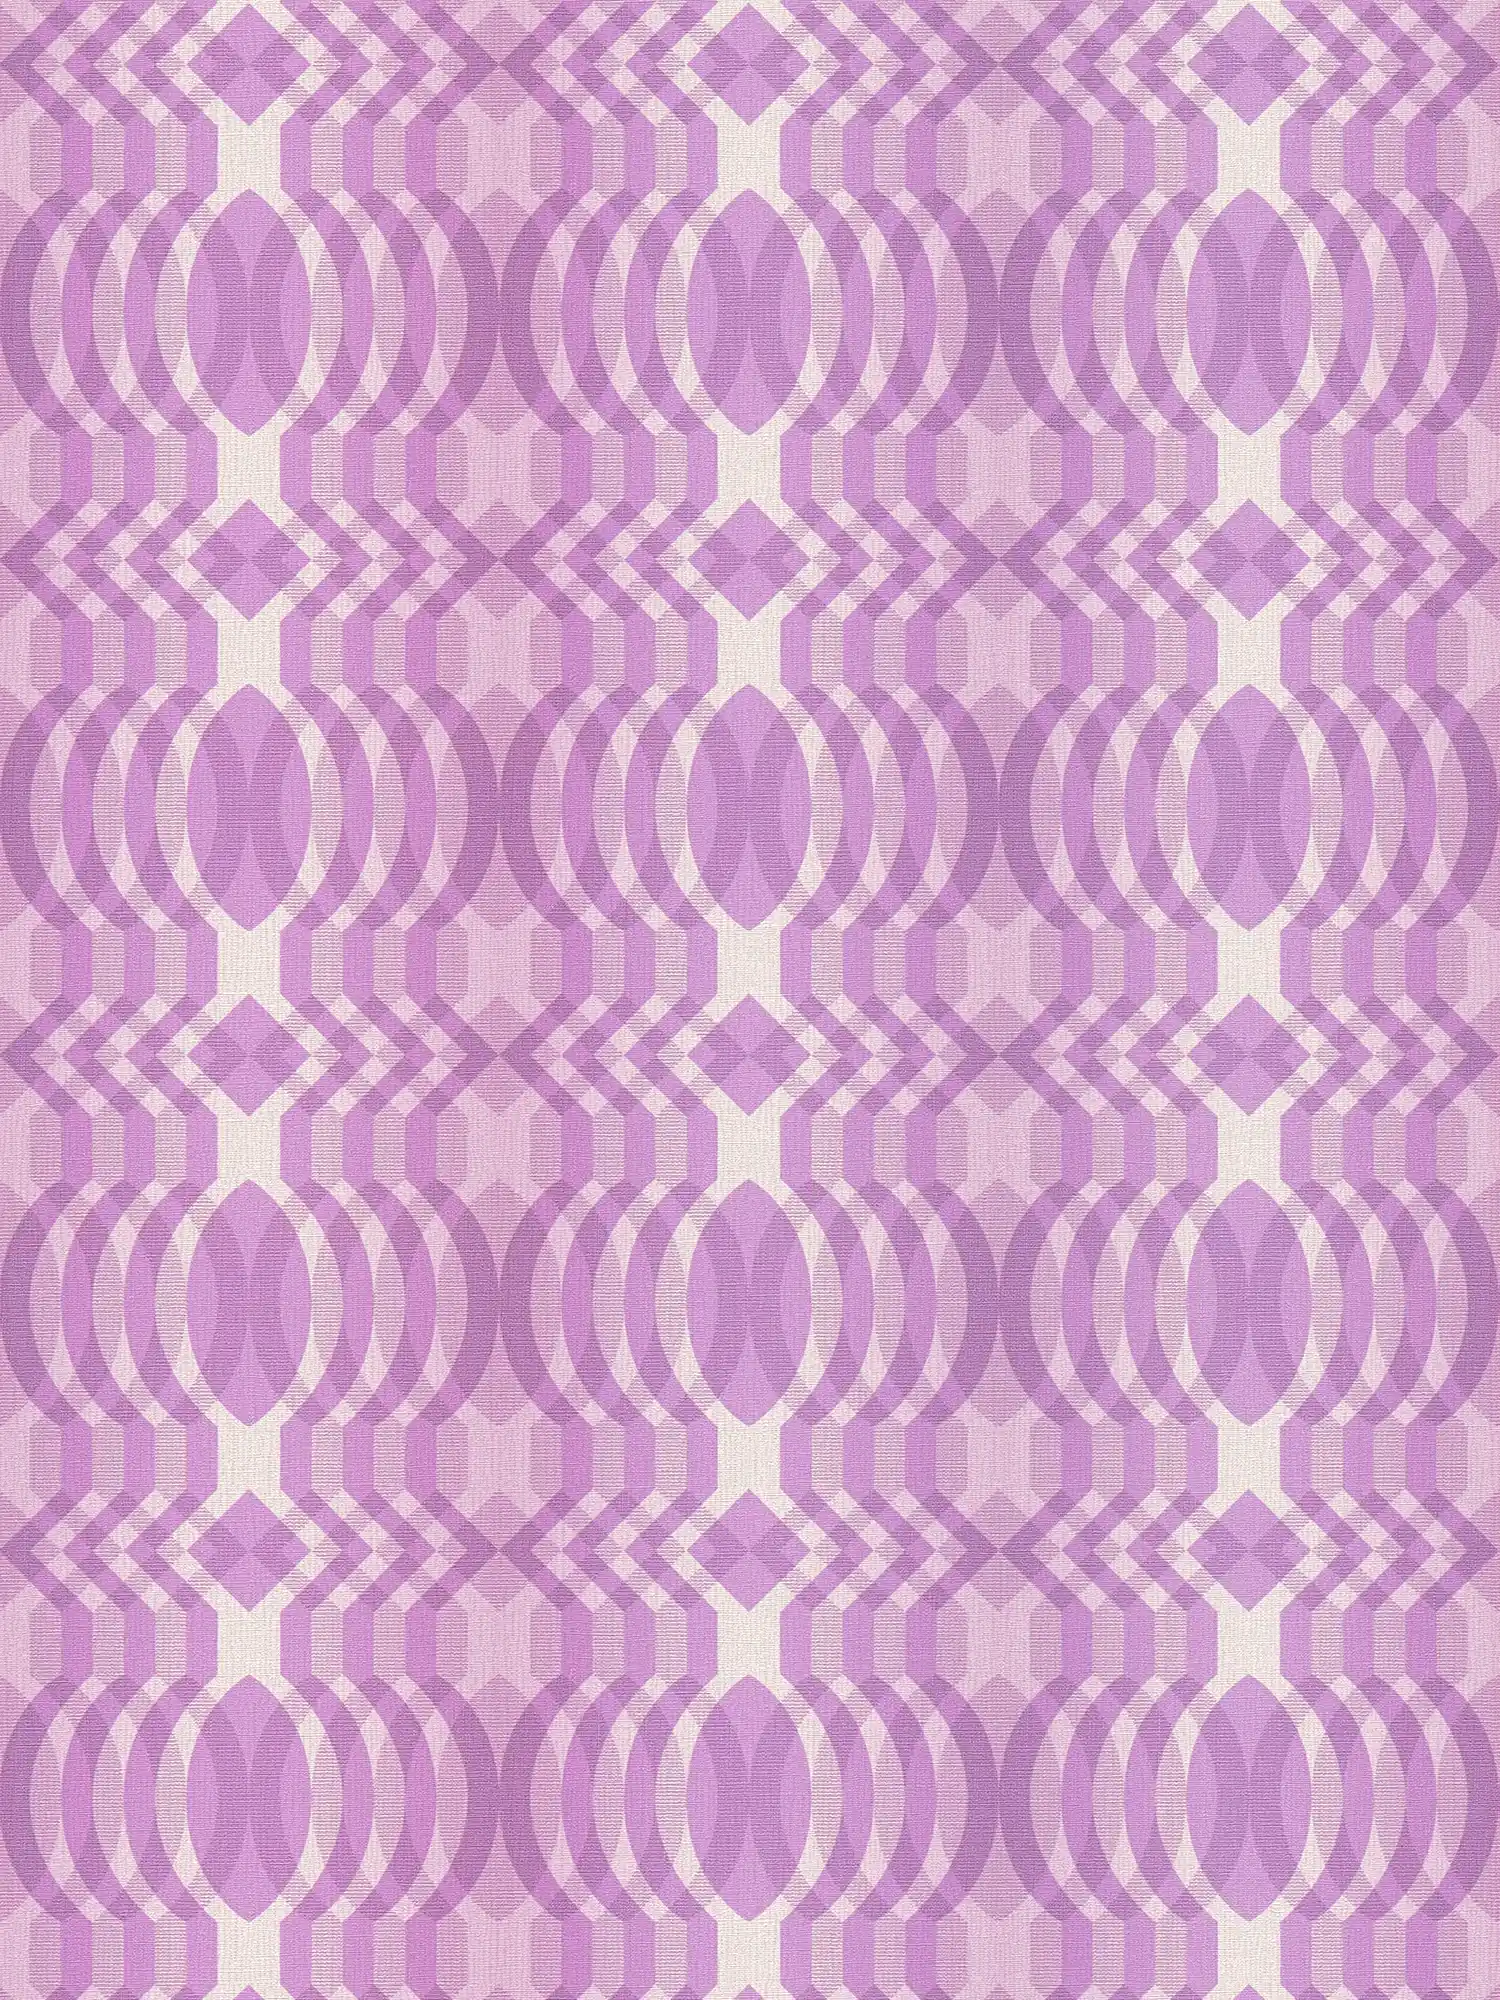 papier peint en papier intissé à motifs géométriques de style rétro - violet, crème, blanc
